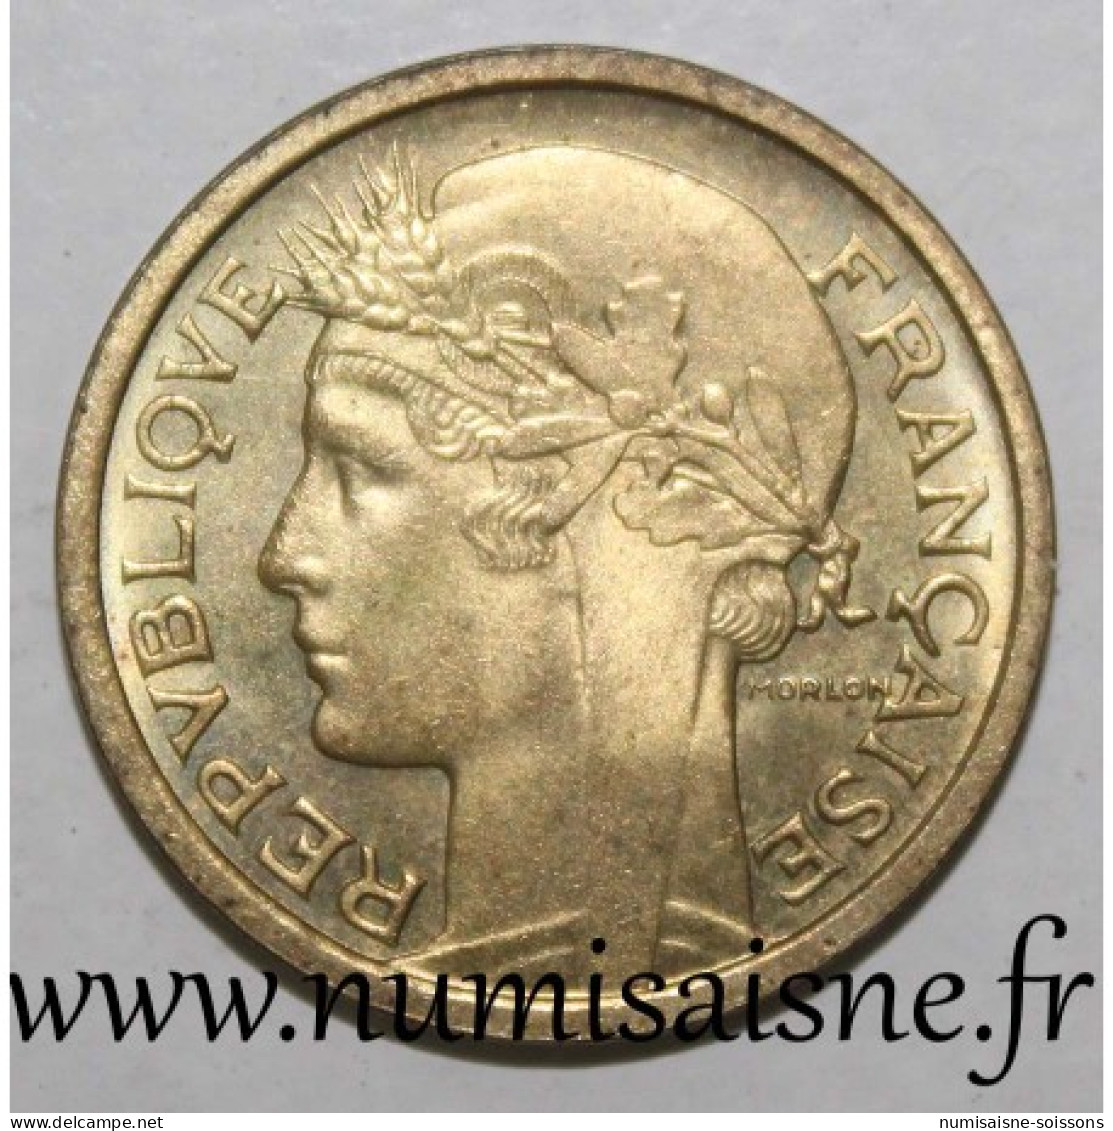 GADOURY 470a - 1 FRANC 1941 - TYPE MORLON - BRONZE ALU - KM 885 - SUP - 1 Franc